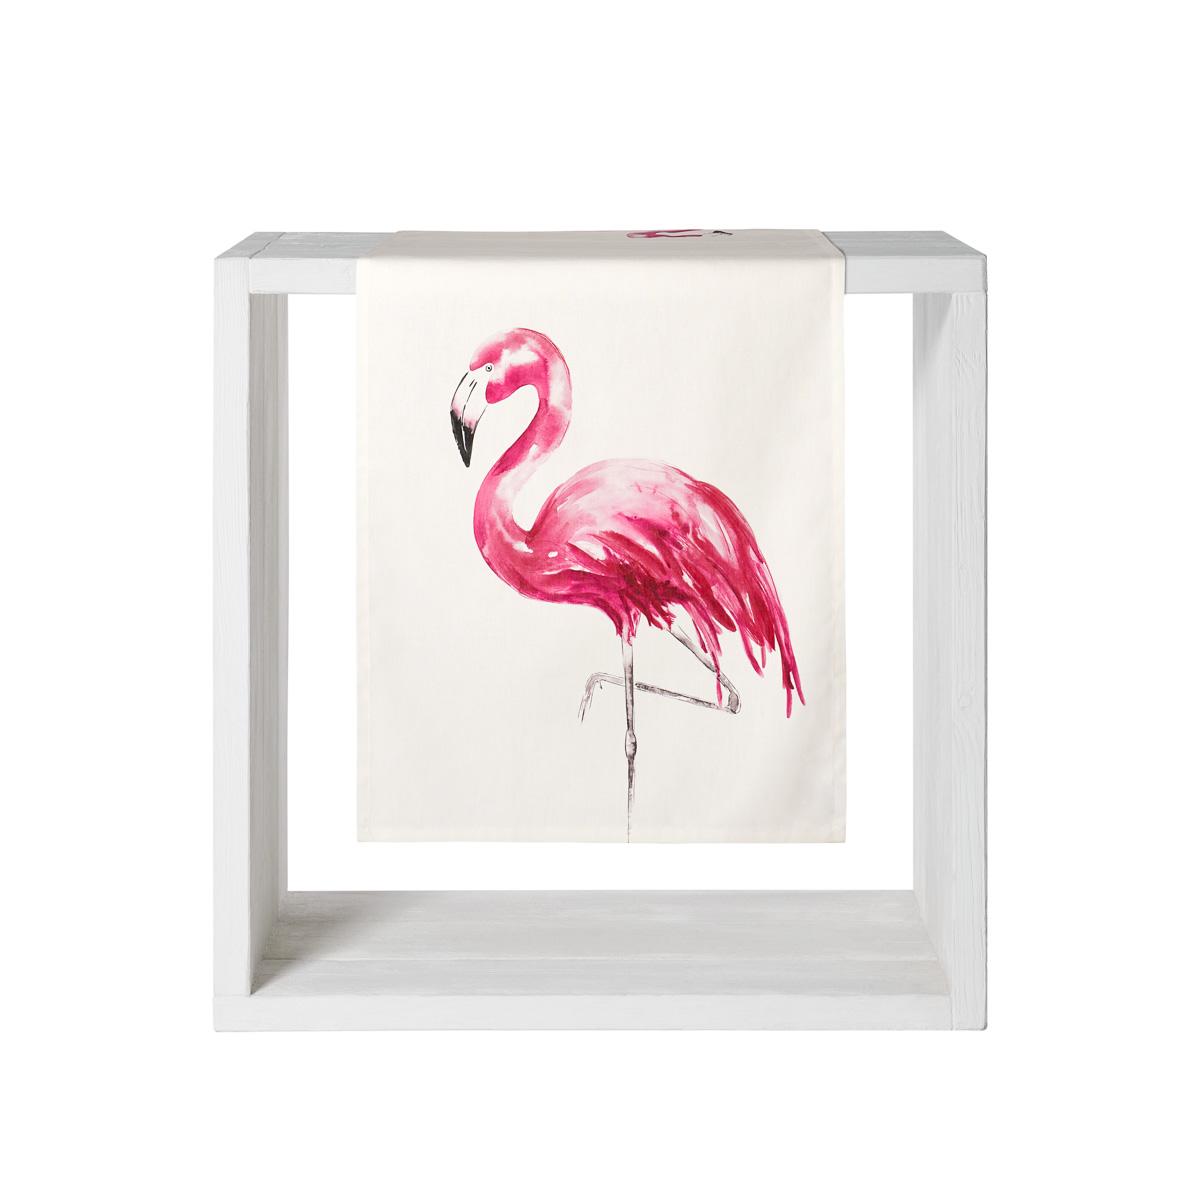 PROFLAX Tischläufer Pinco 2 fuchsia /Pink, Flamingo, natur 50x140 cm